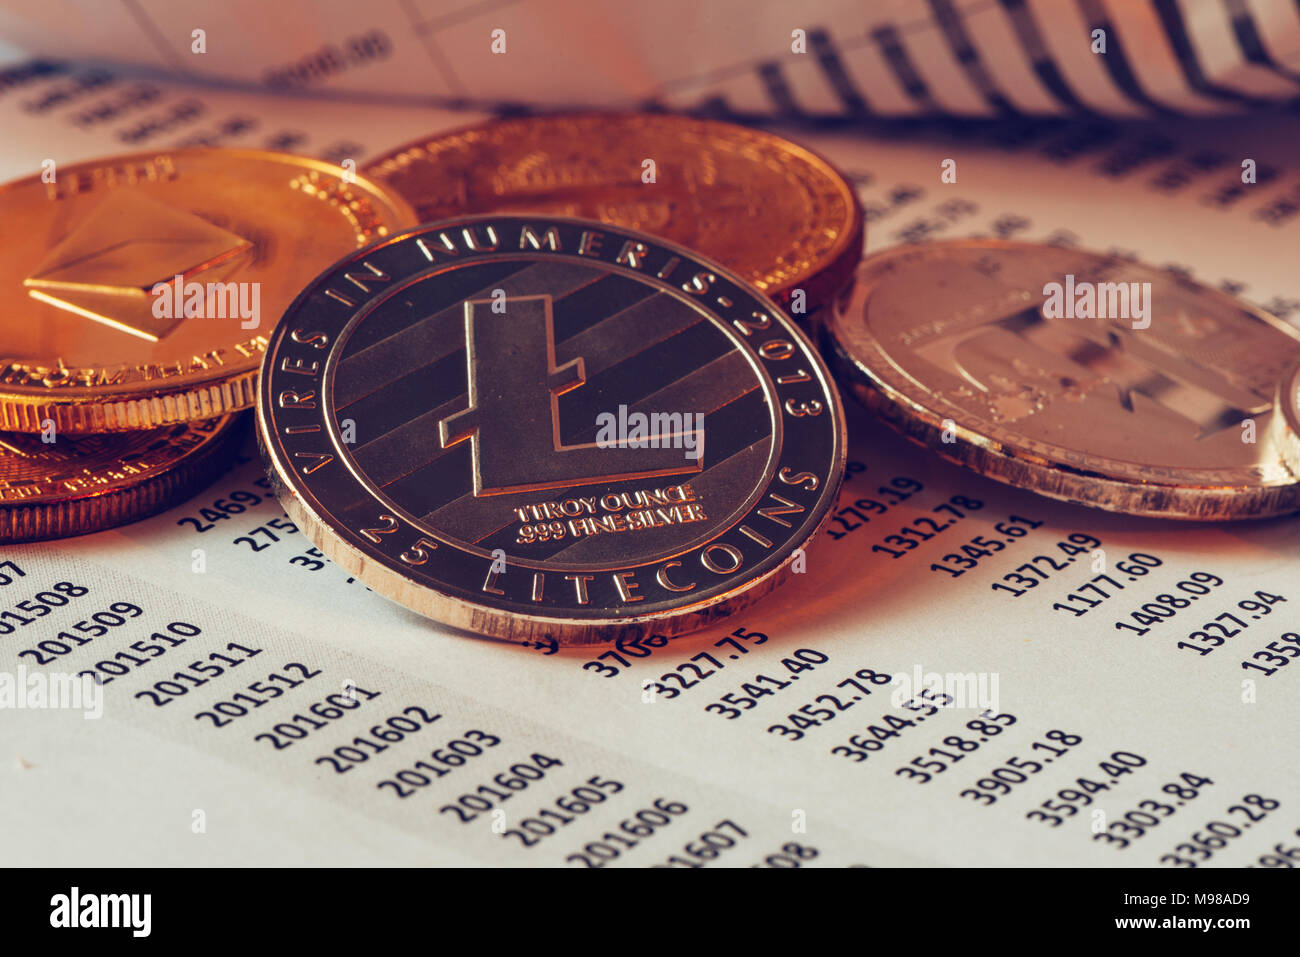 Litecoin cryptocurrency, blockchain Technologie dezentrale Währung Münze, konzeptionelle Bild mit selektiven Fokus Stockfoto